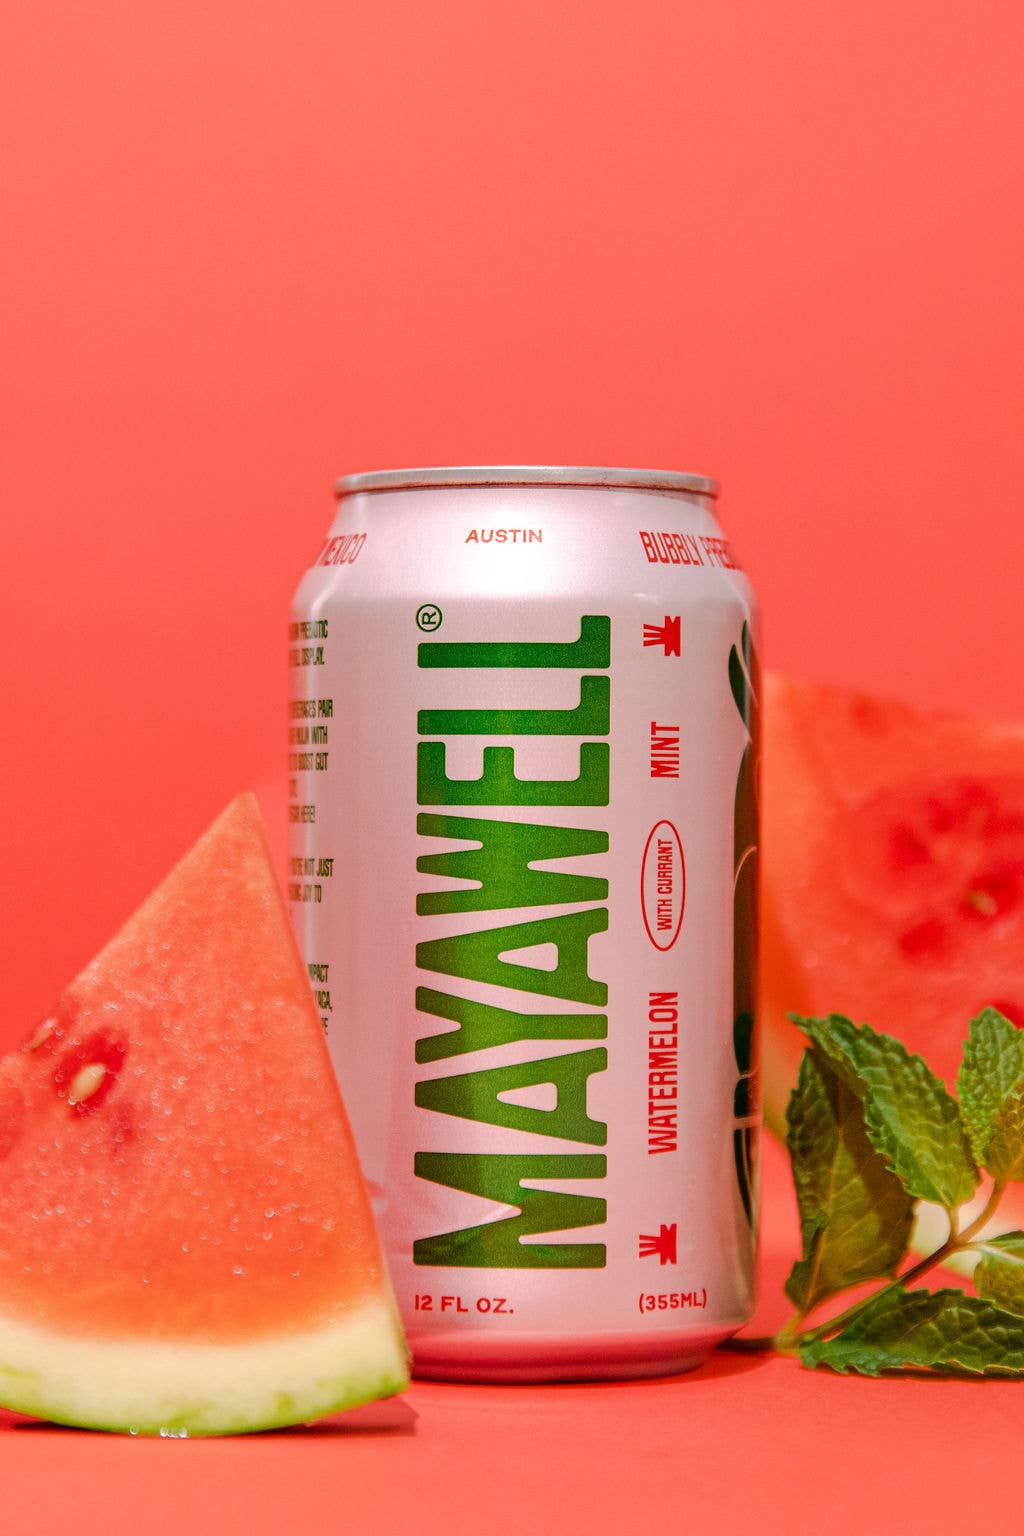 Mayawell Watermelon Mint